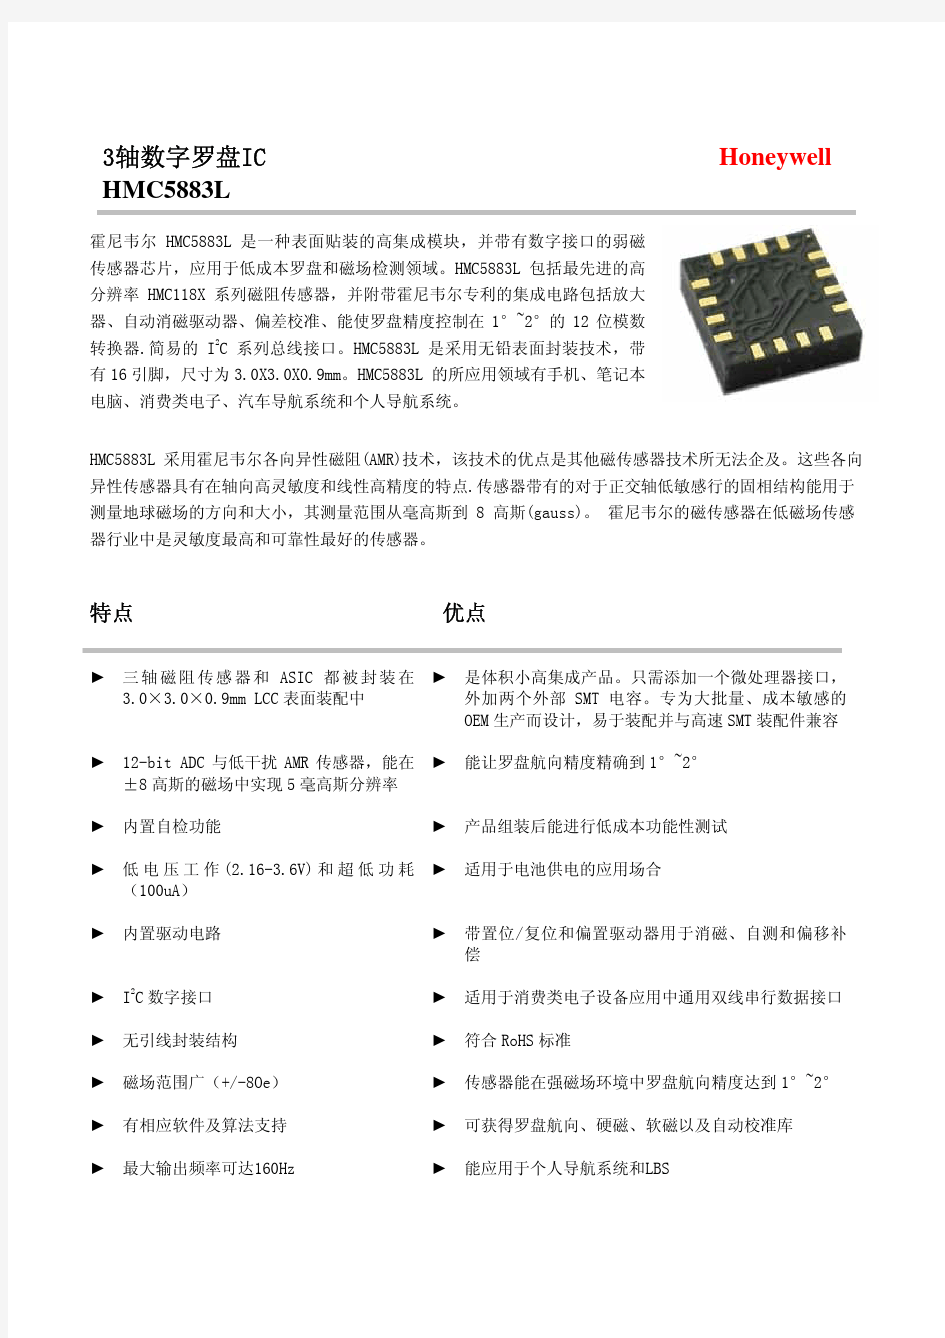 HMC 5883L中文数据手册_已解锁